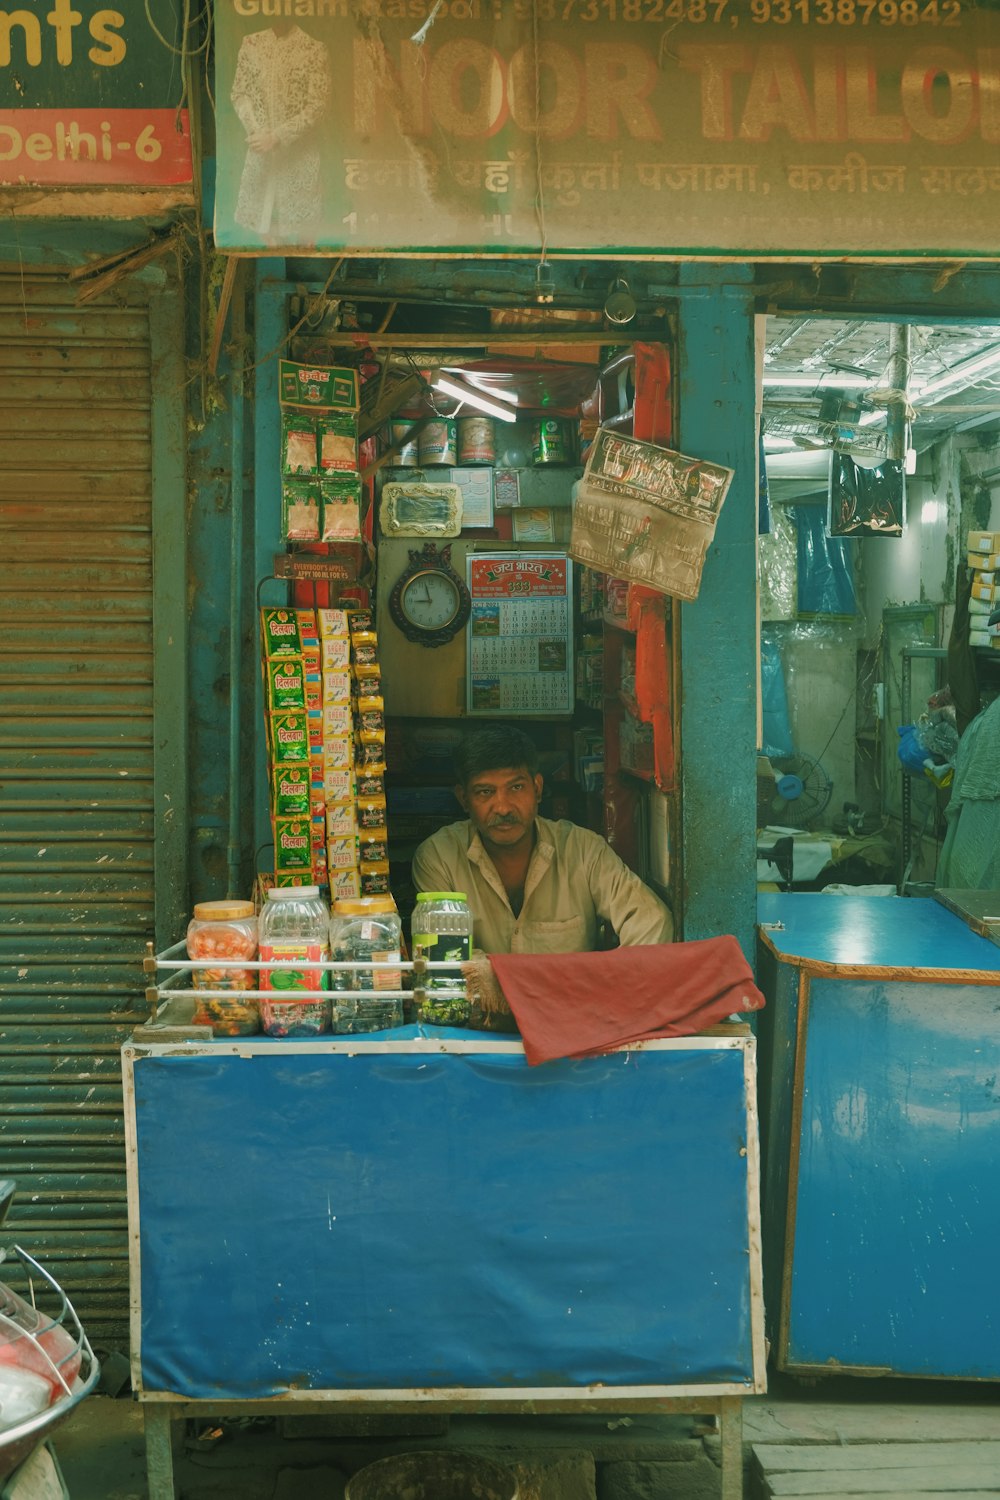 Un uomo seduto a uno stand gastronomico di fronte a un negozio